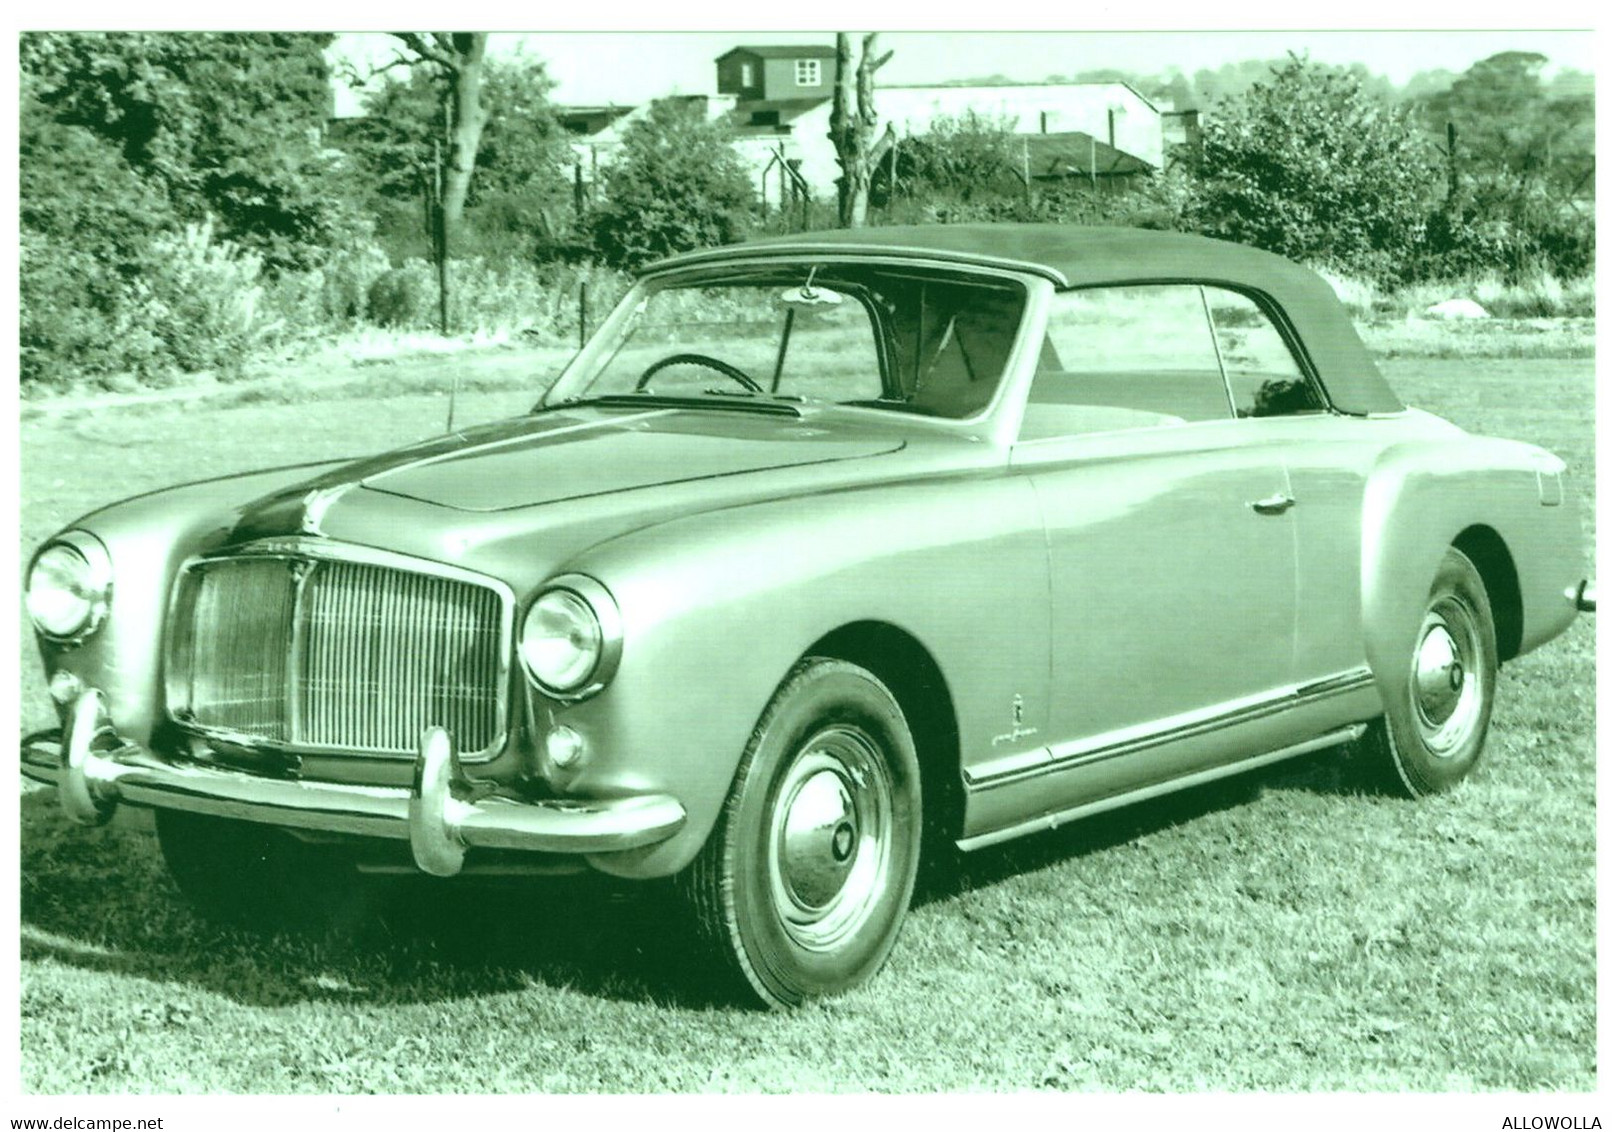 17227 " ROVER P4 CONVERTIBLE PININFARINA (1953)  " RIPRODUZIONE SU CARTA FOTOGRAFICA-FOTO B/N Cm. 10,2 X 15,2 - Automobile